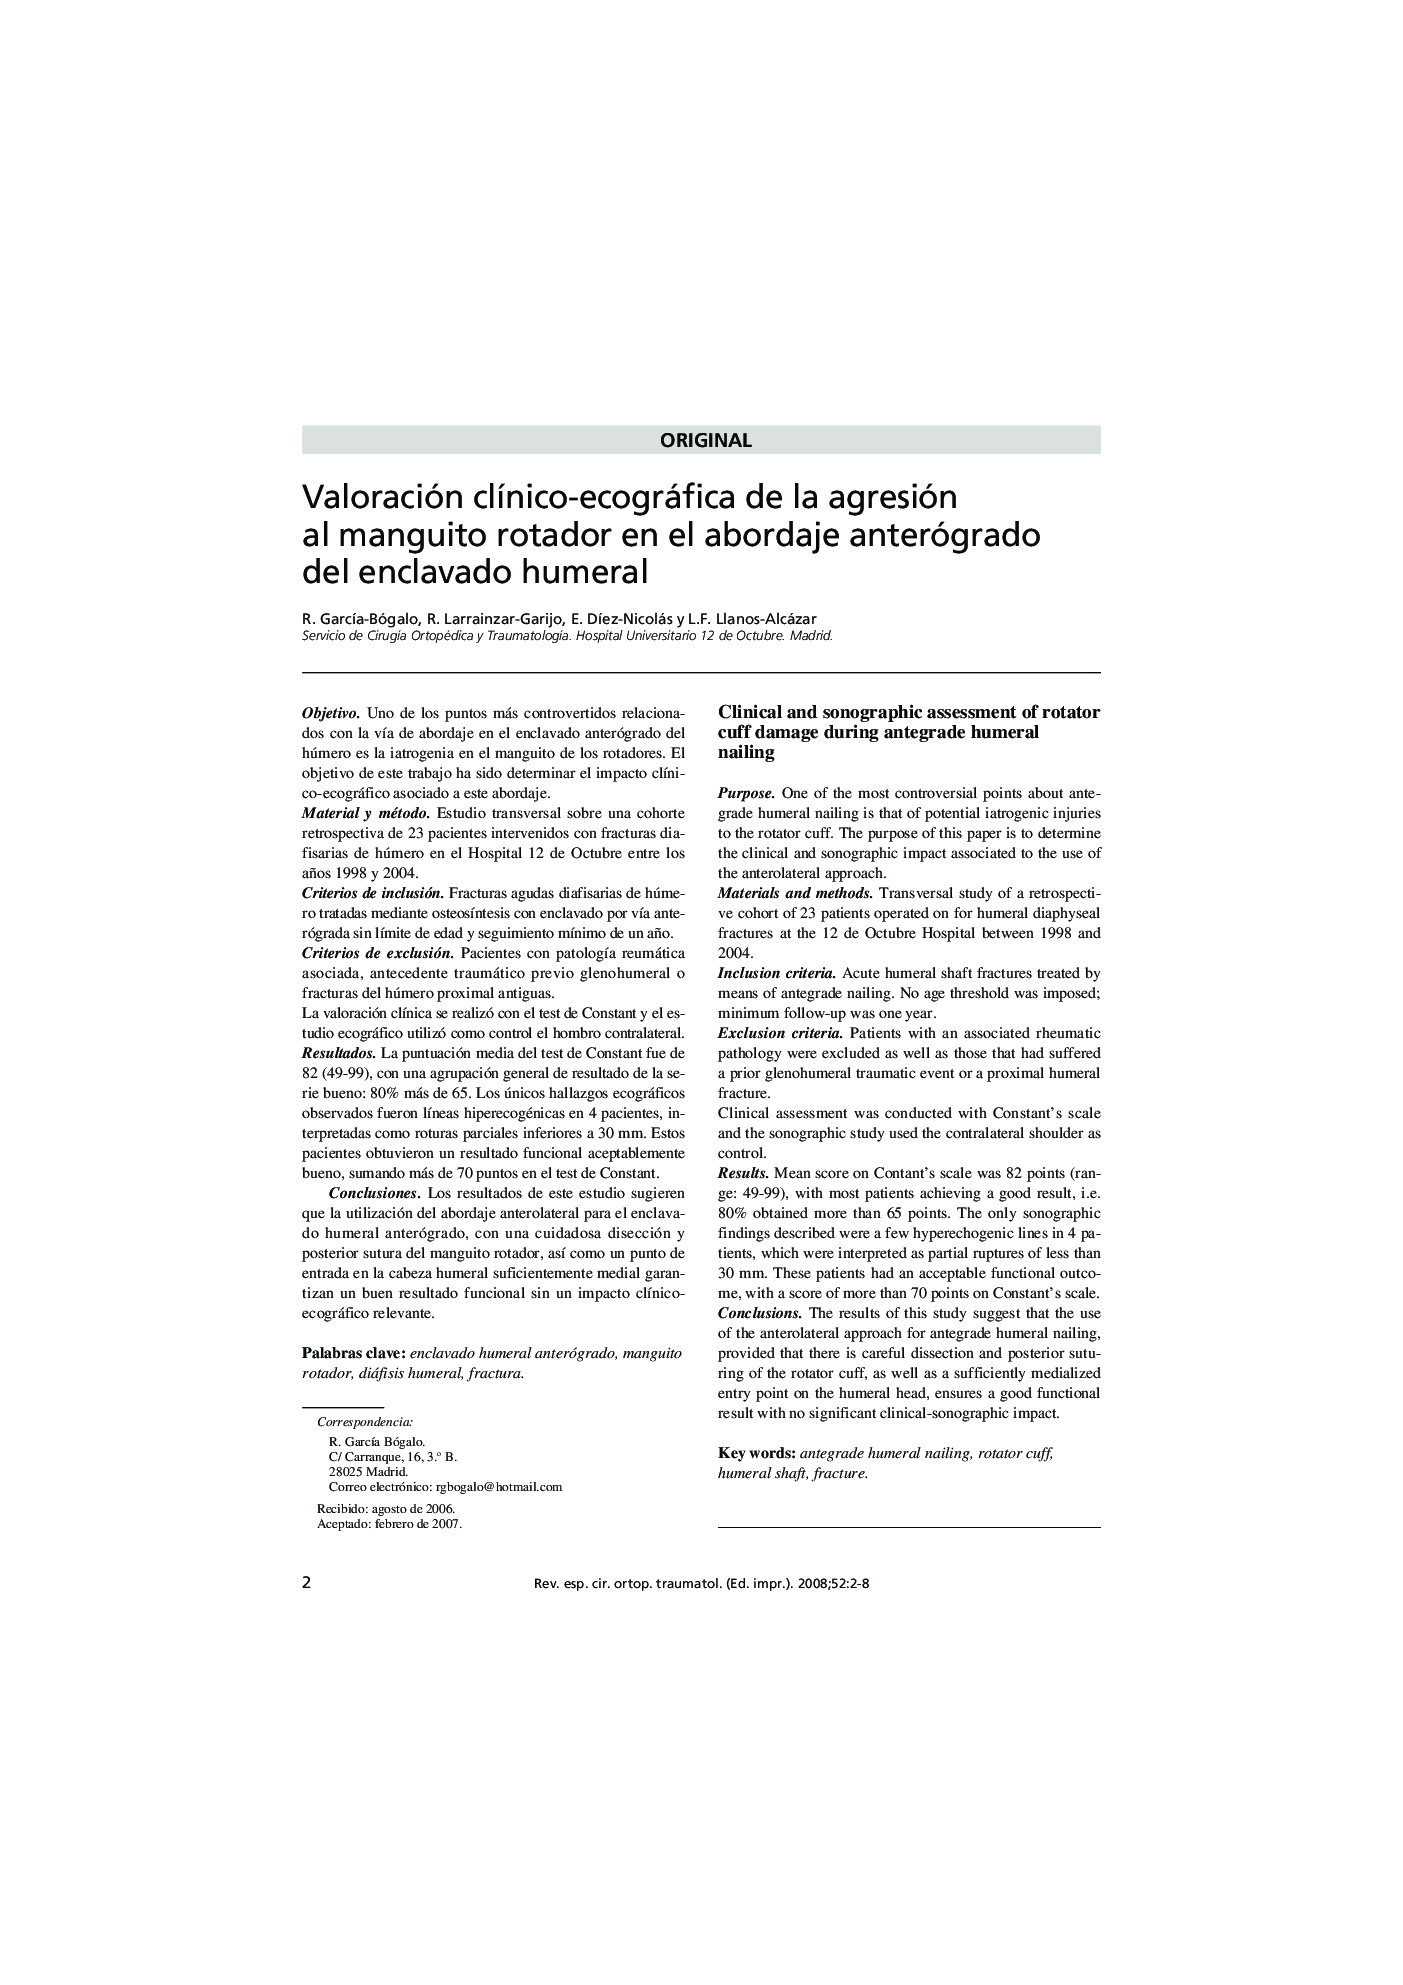 Valoración clínico-ecográfica de la agresión al manguito rotador en el abordaje anterógrado del enclavado humeral